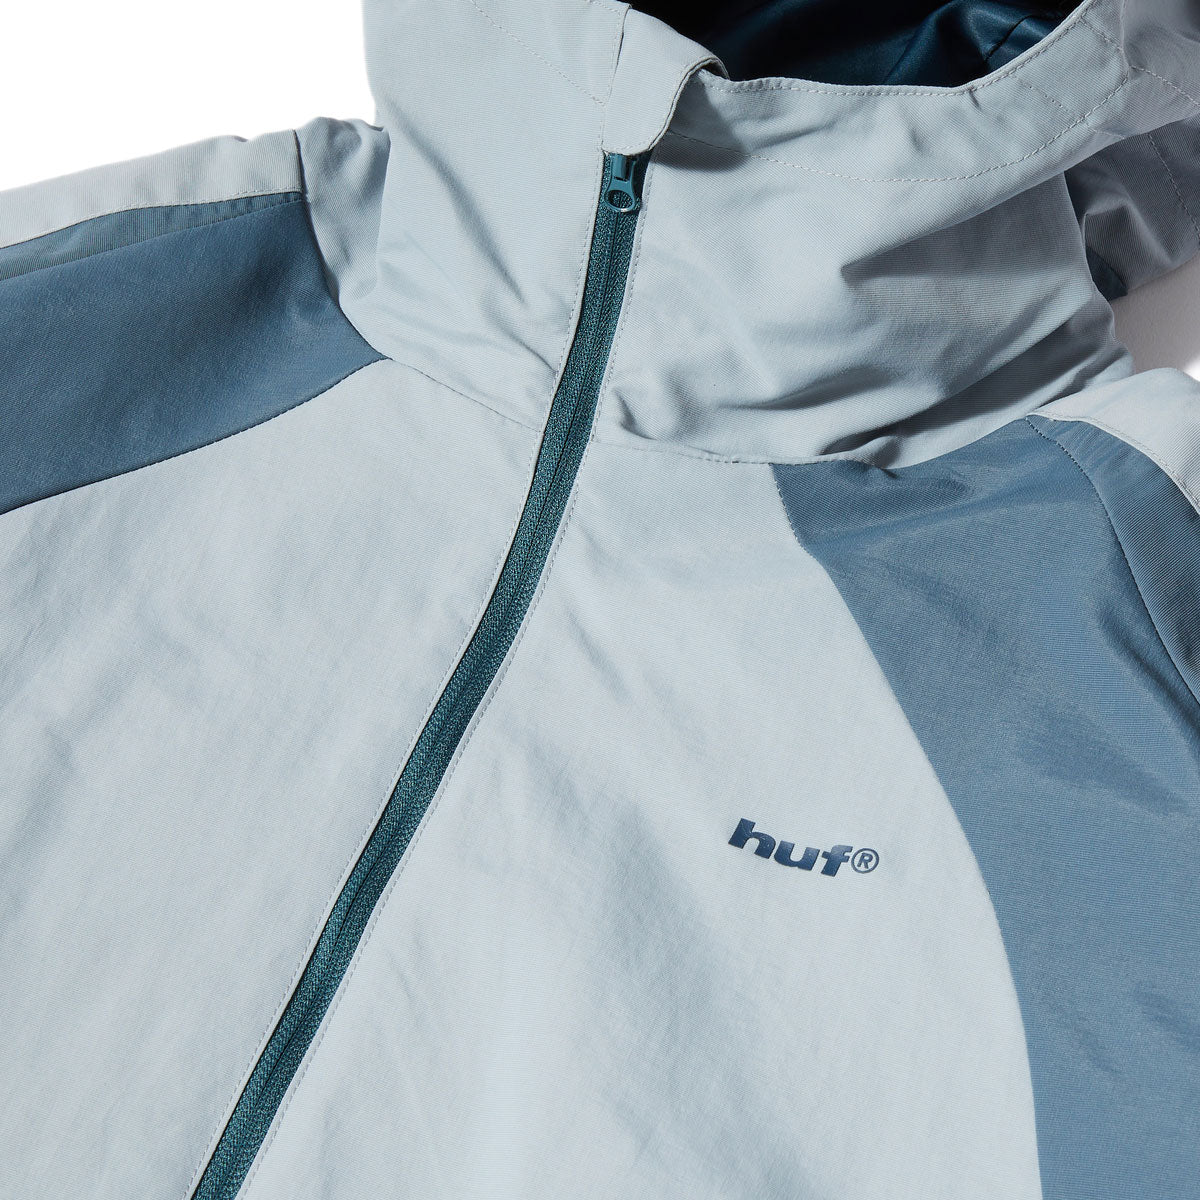 HUF Set Shell Jacket - Blue Fog image 4